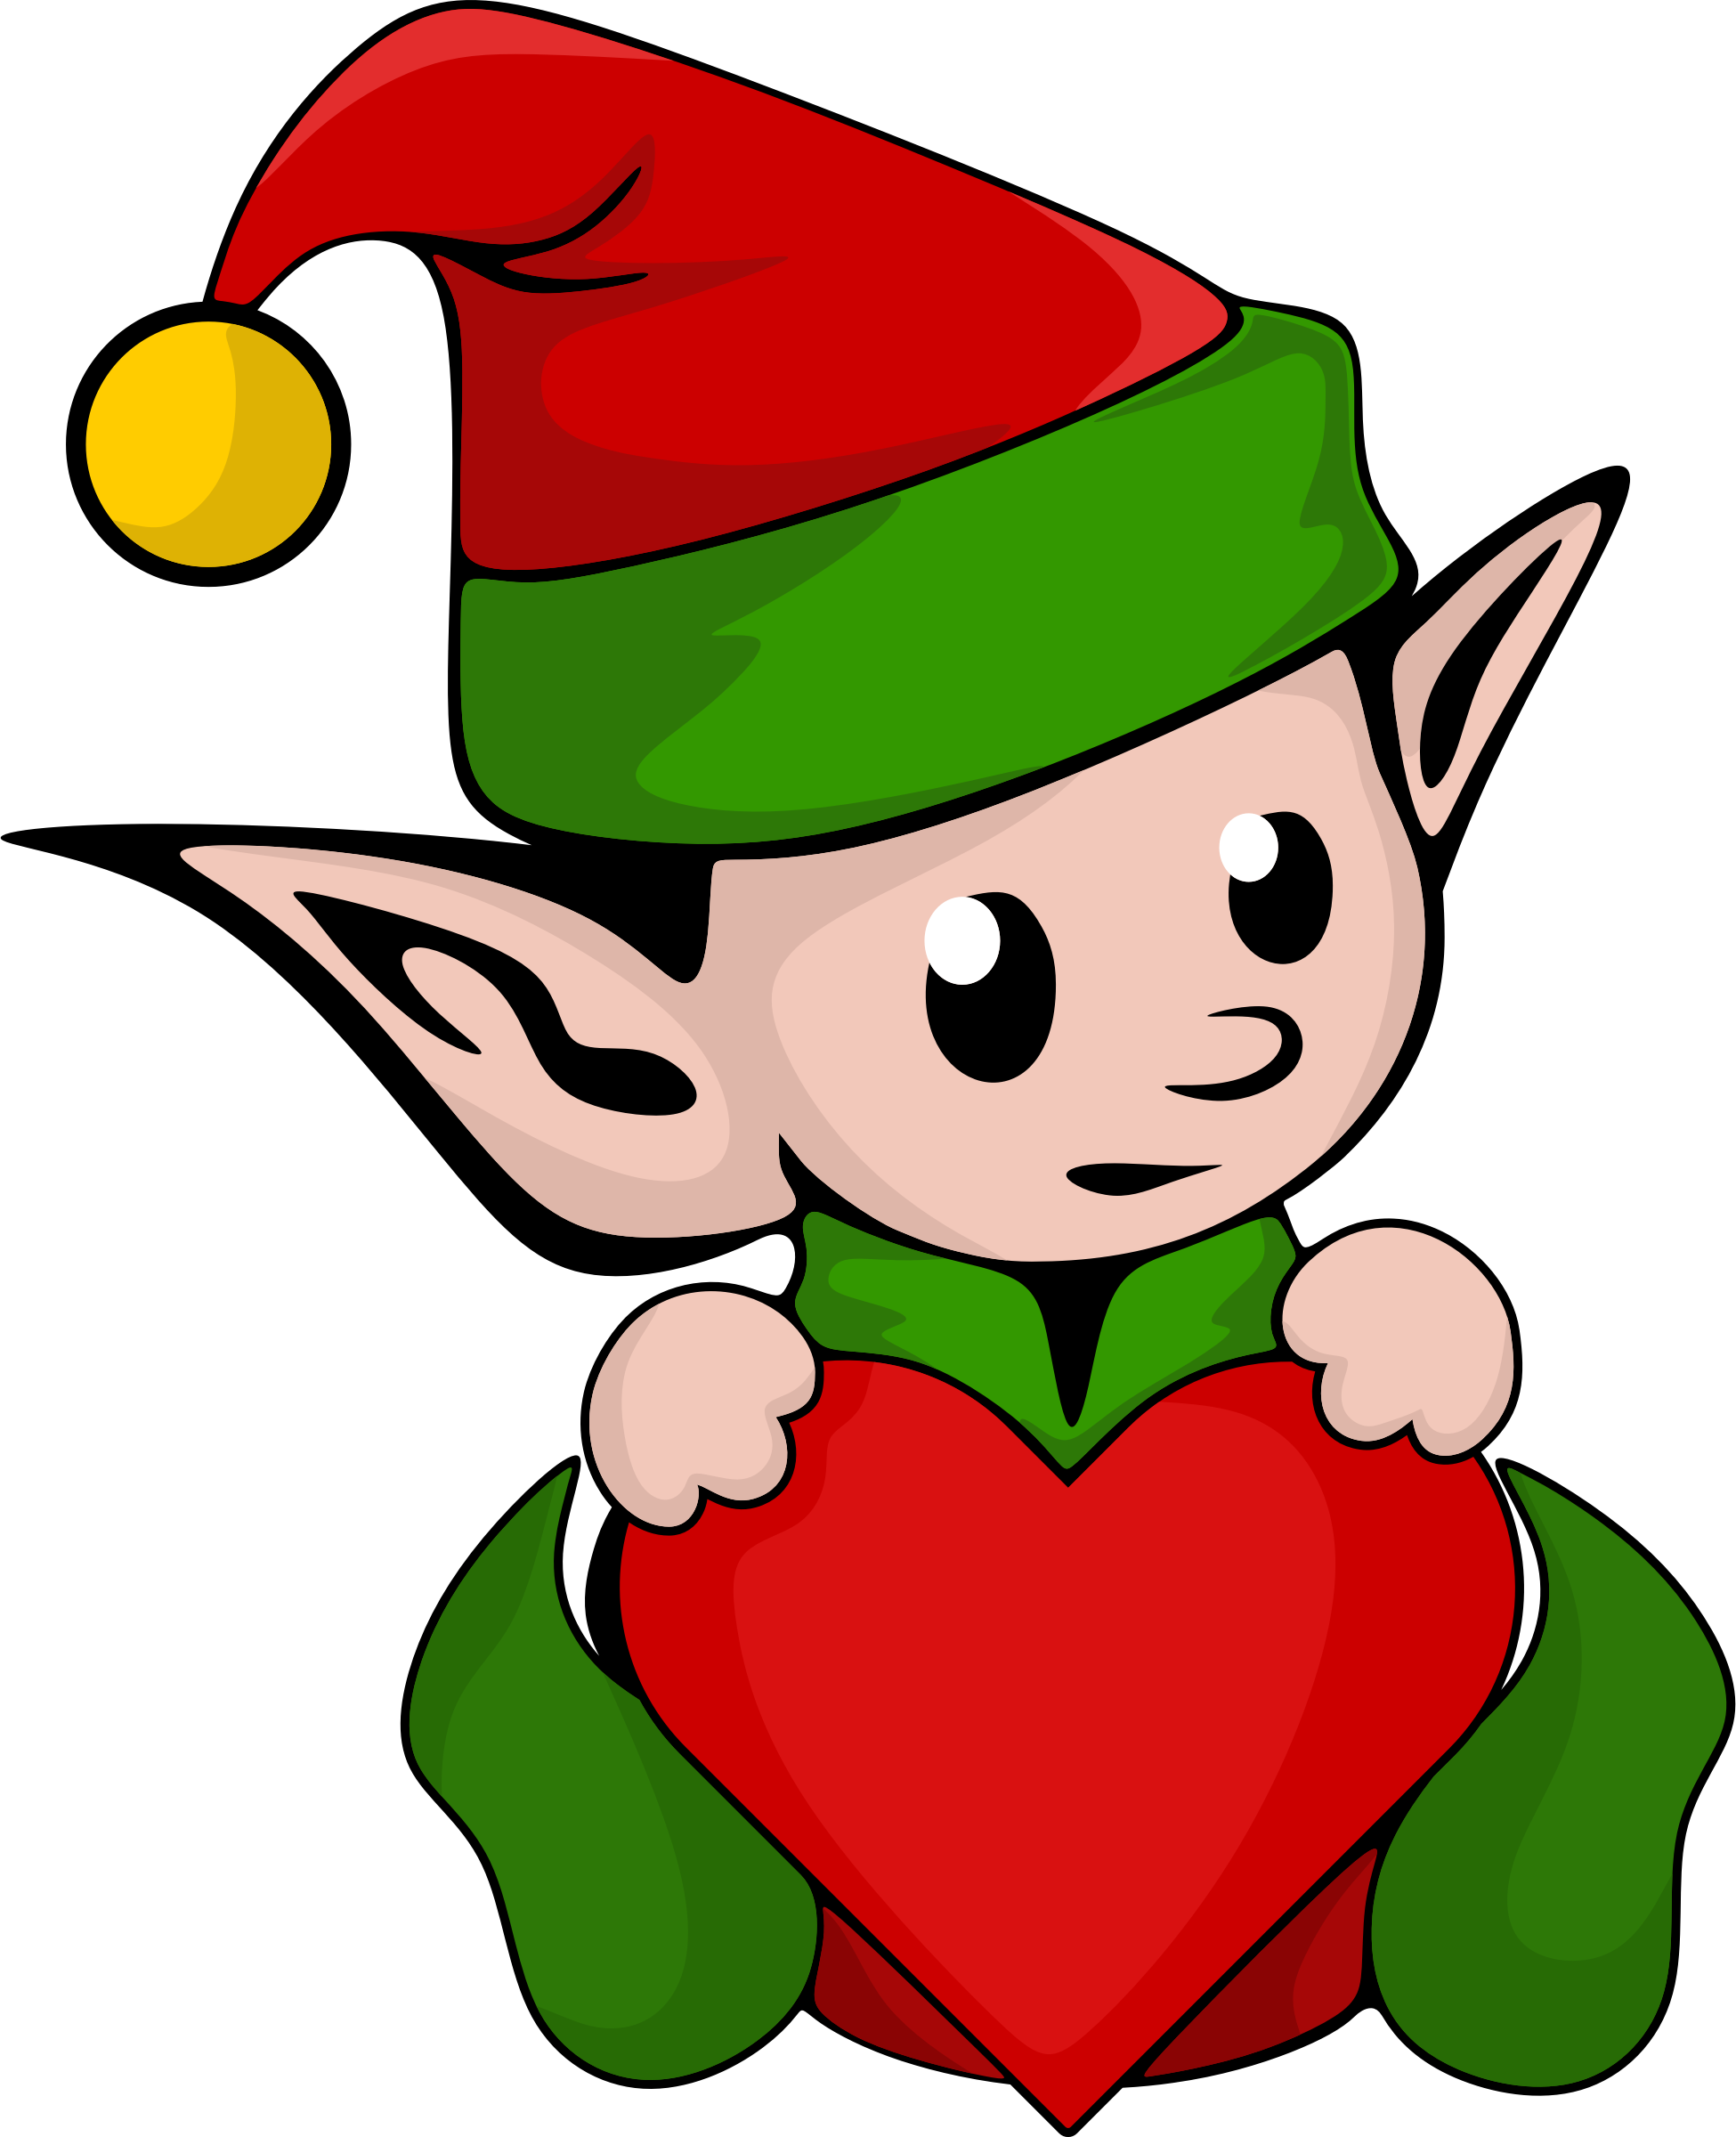 A Cartoon Of A Elf Holding A Heart